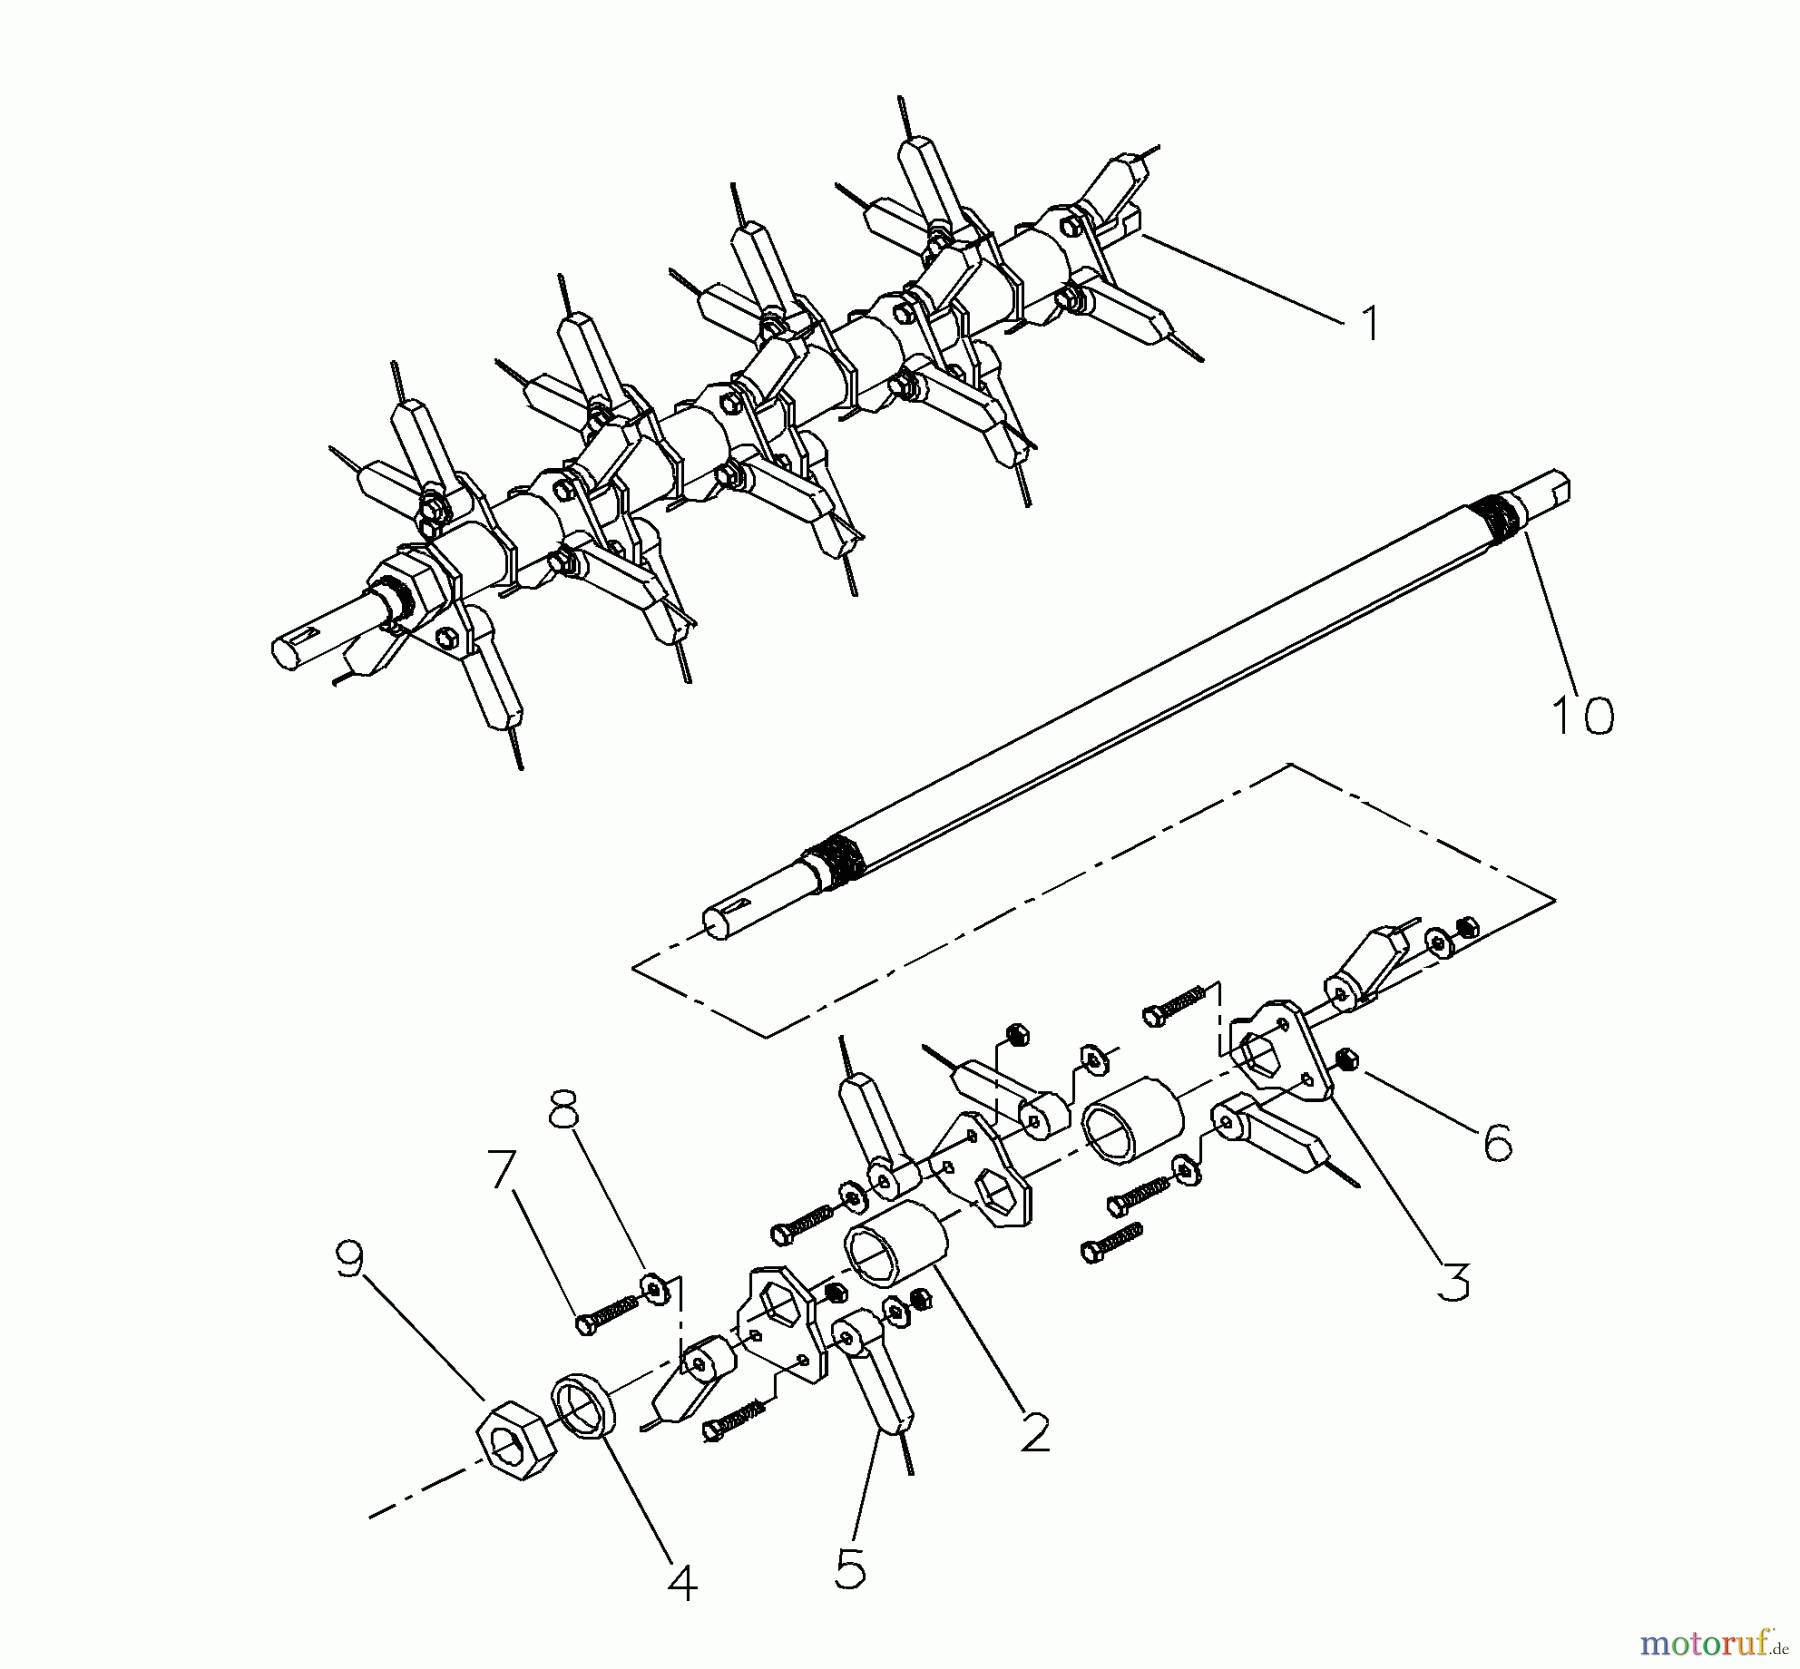  Husqvarna Belüfter / Vertikutierer / Rechen DT 20 (968999190) - Husqvarna Dethatcher (2000-09 & After) Spring Tine Shaft Assembly